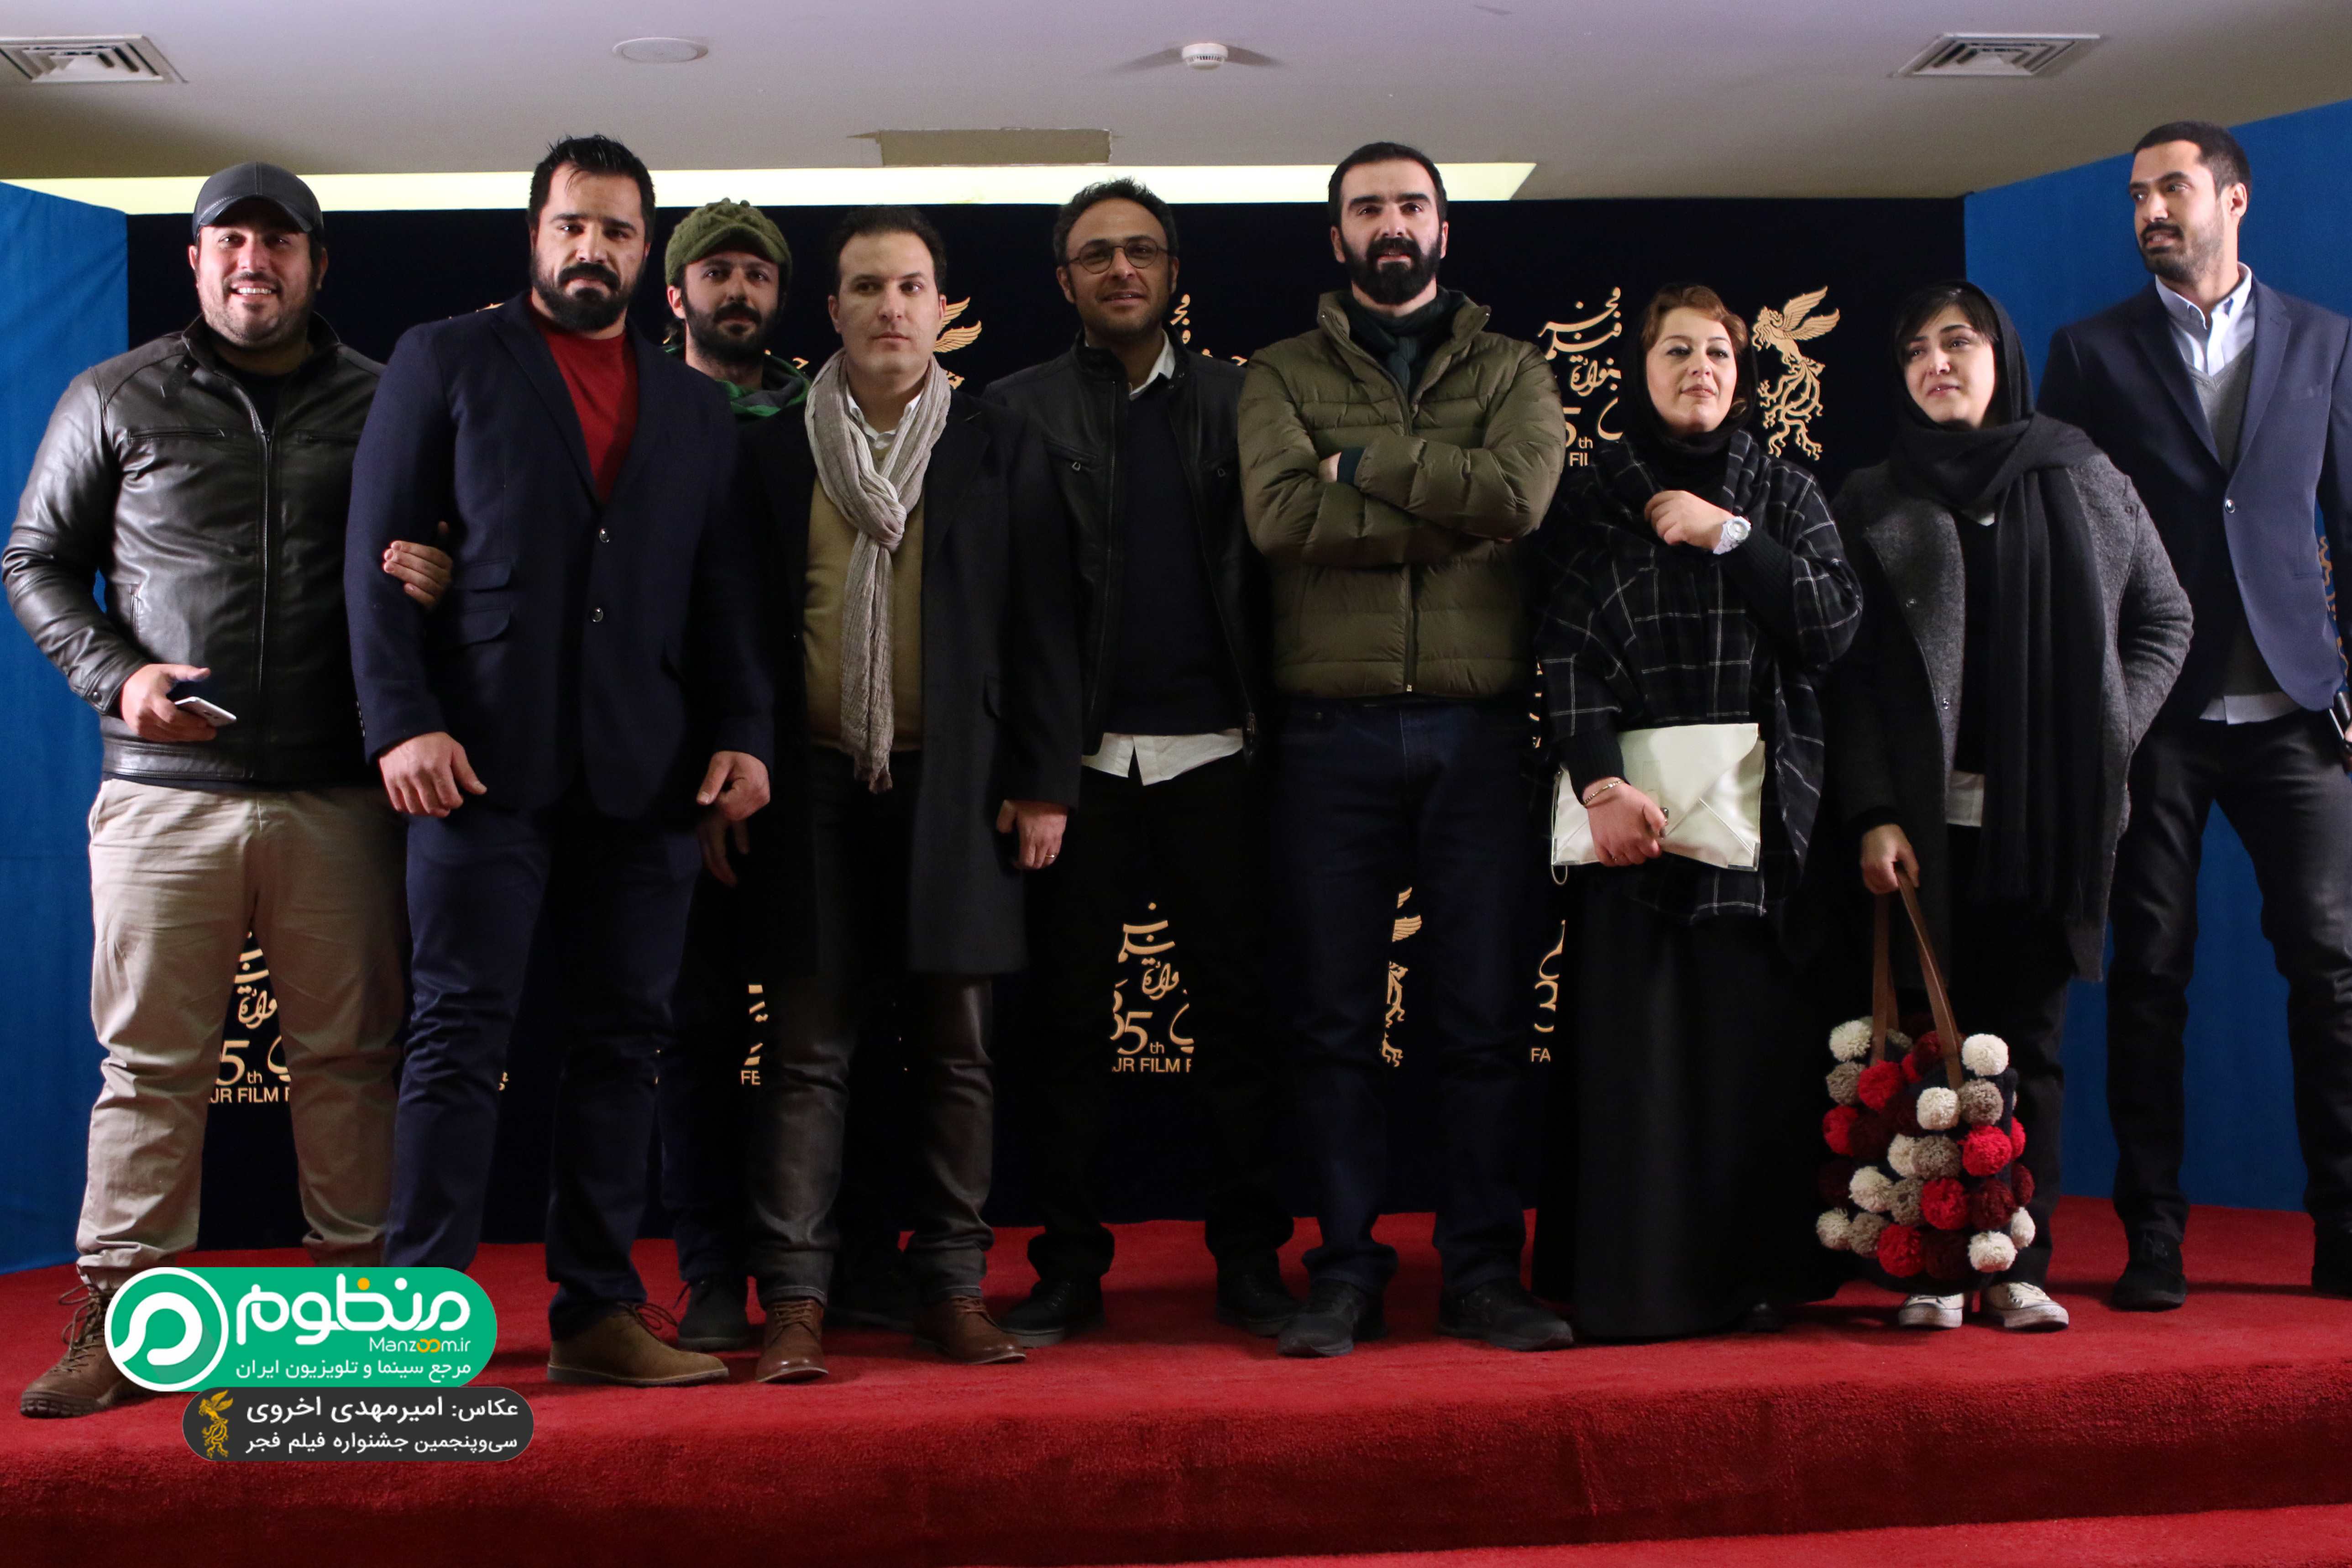 سپیده عبدالوهاب در فرش قرمز فیلم سینمایی سد معبر به همراه محسن کیایی، باران کوثری، محسن قرایی و علیرضا کمالی